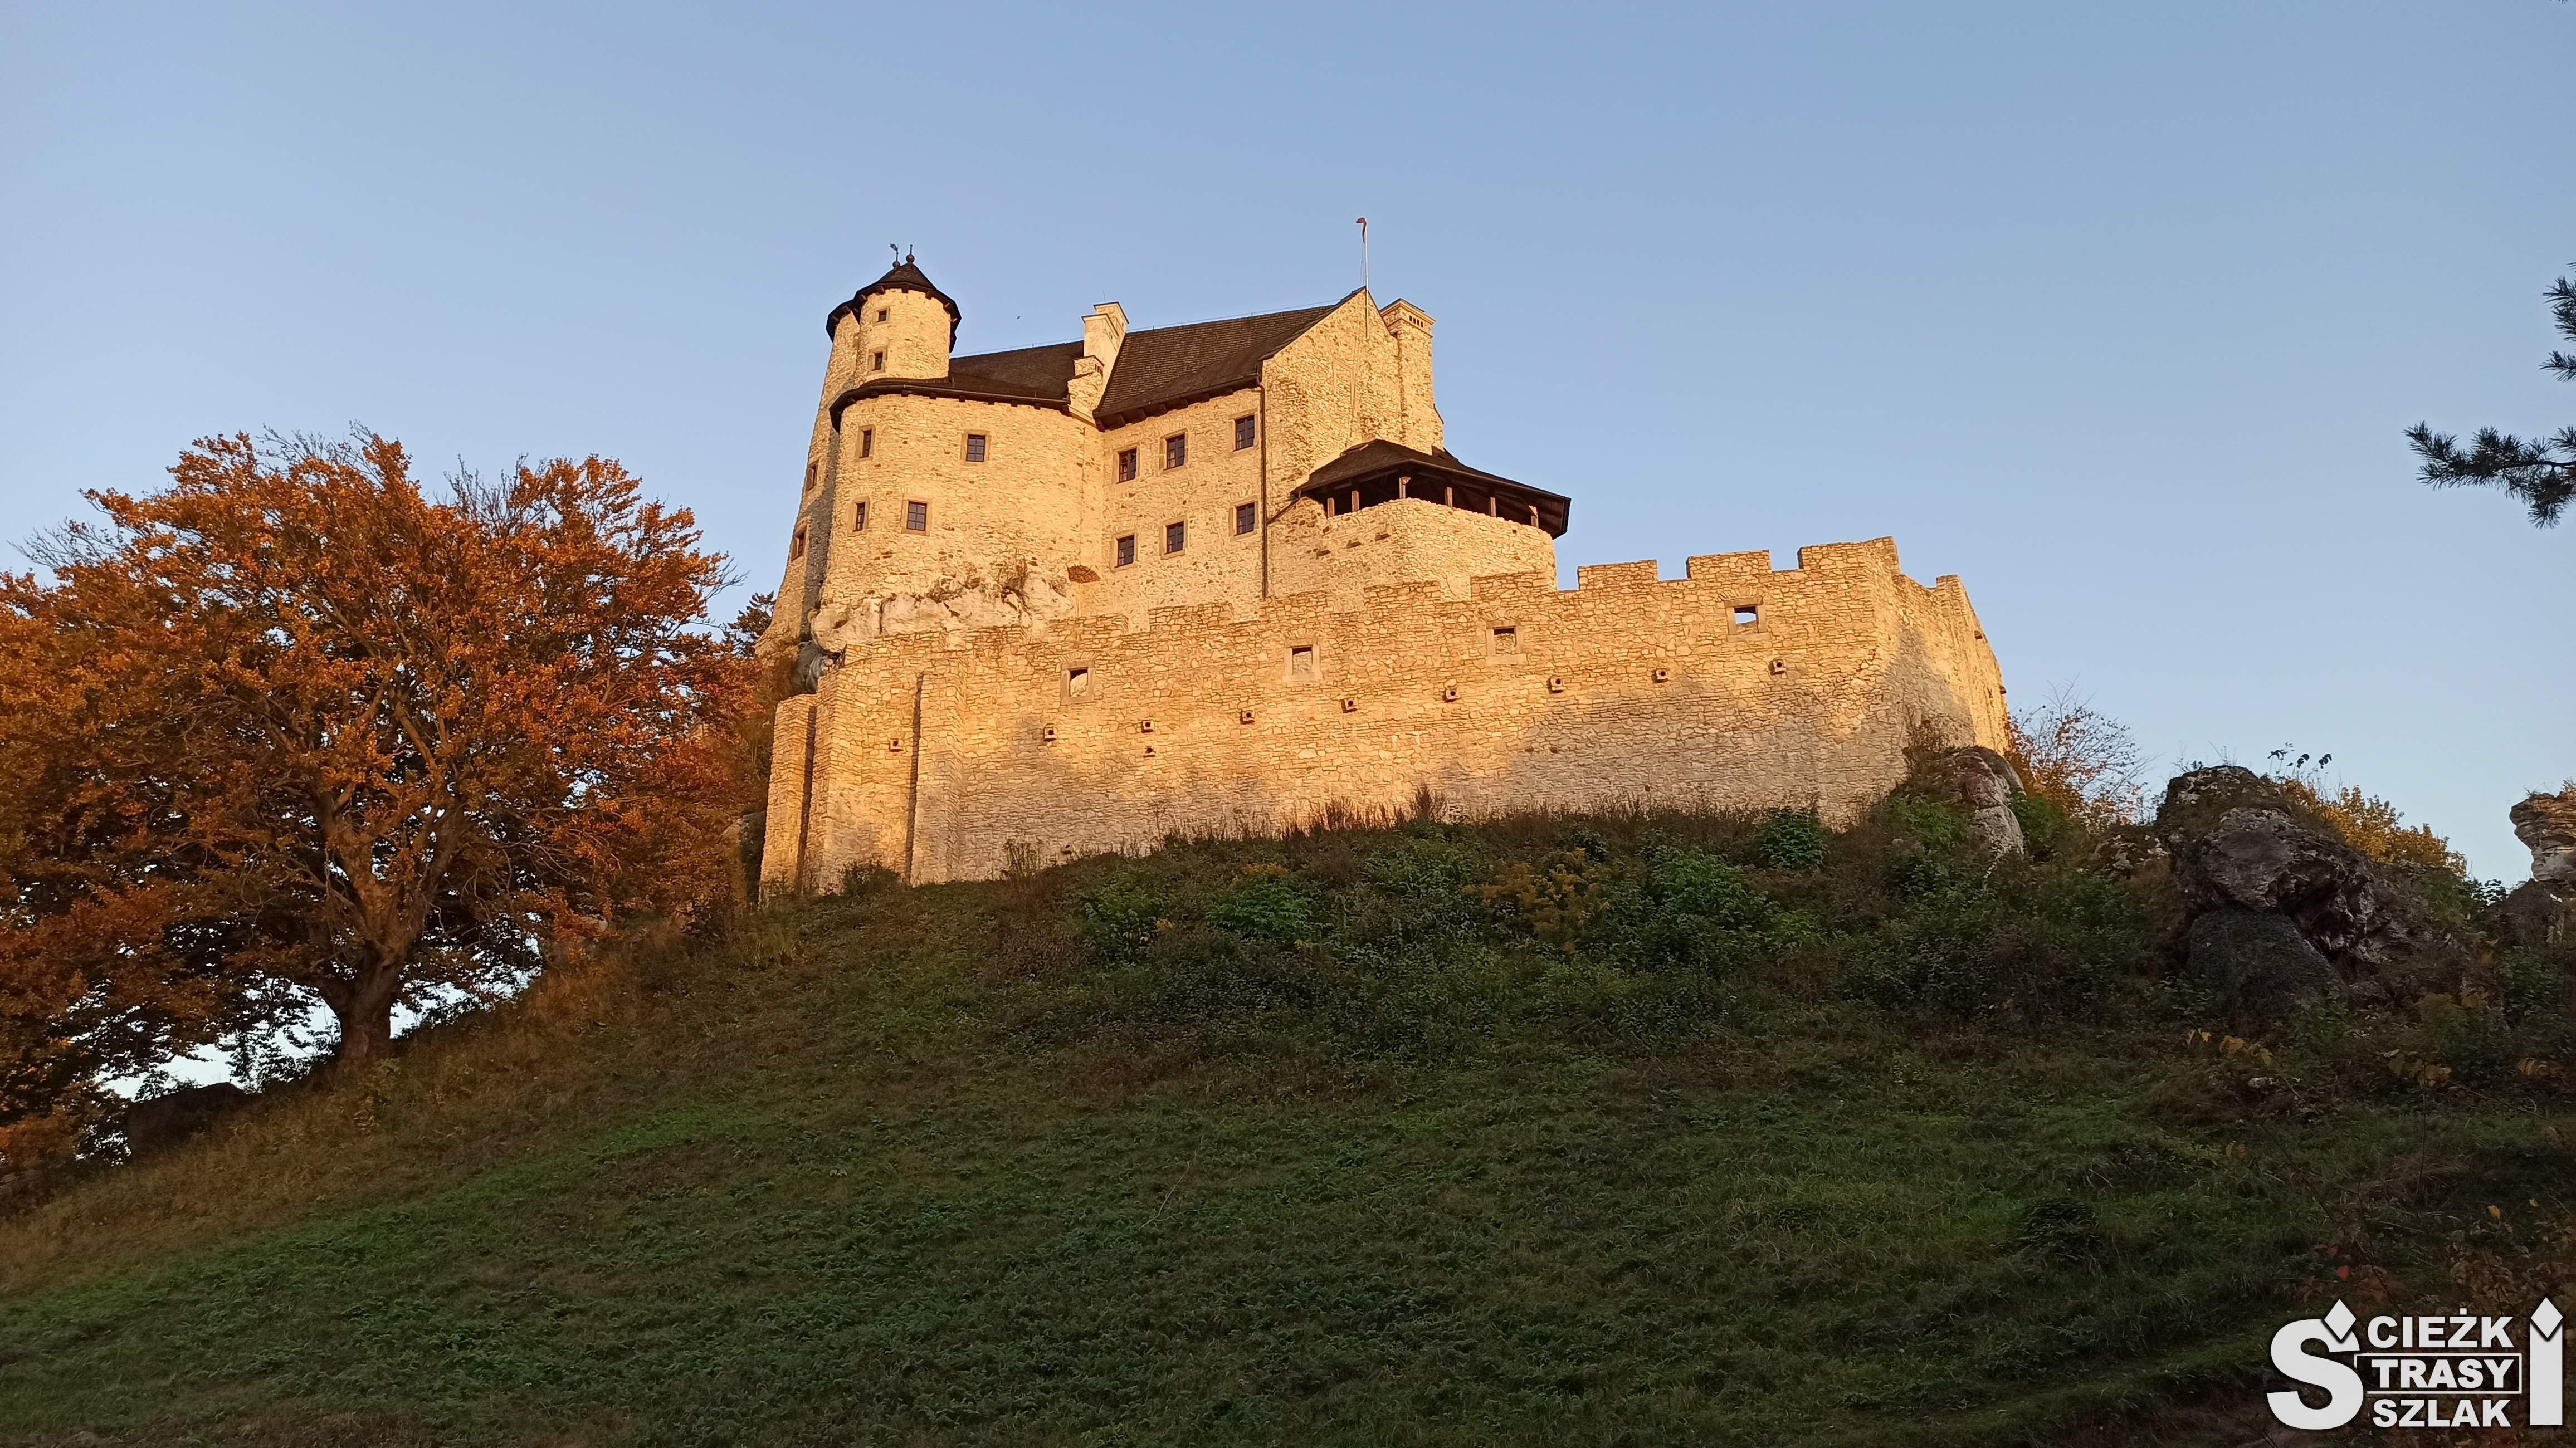 Zamek Bobolice otoczony murem obronnym na porośniętej trawą górze przy drzewie w jesiennej barwie